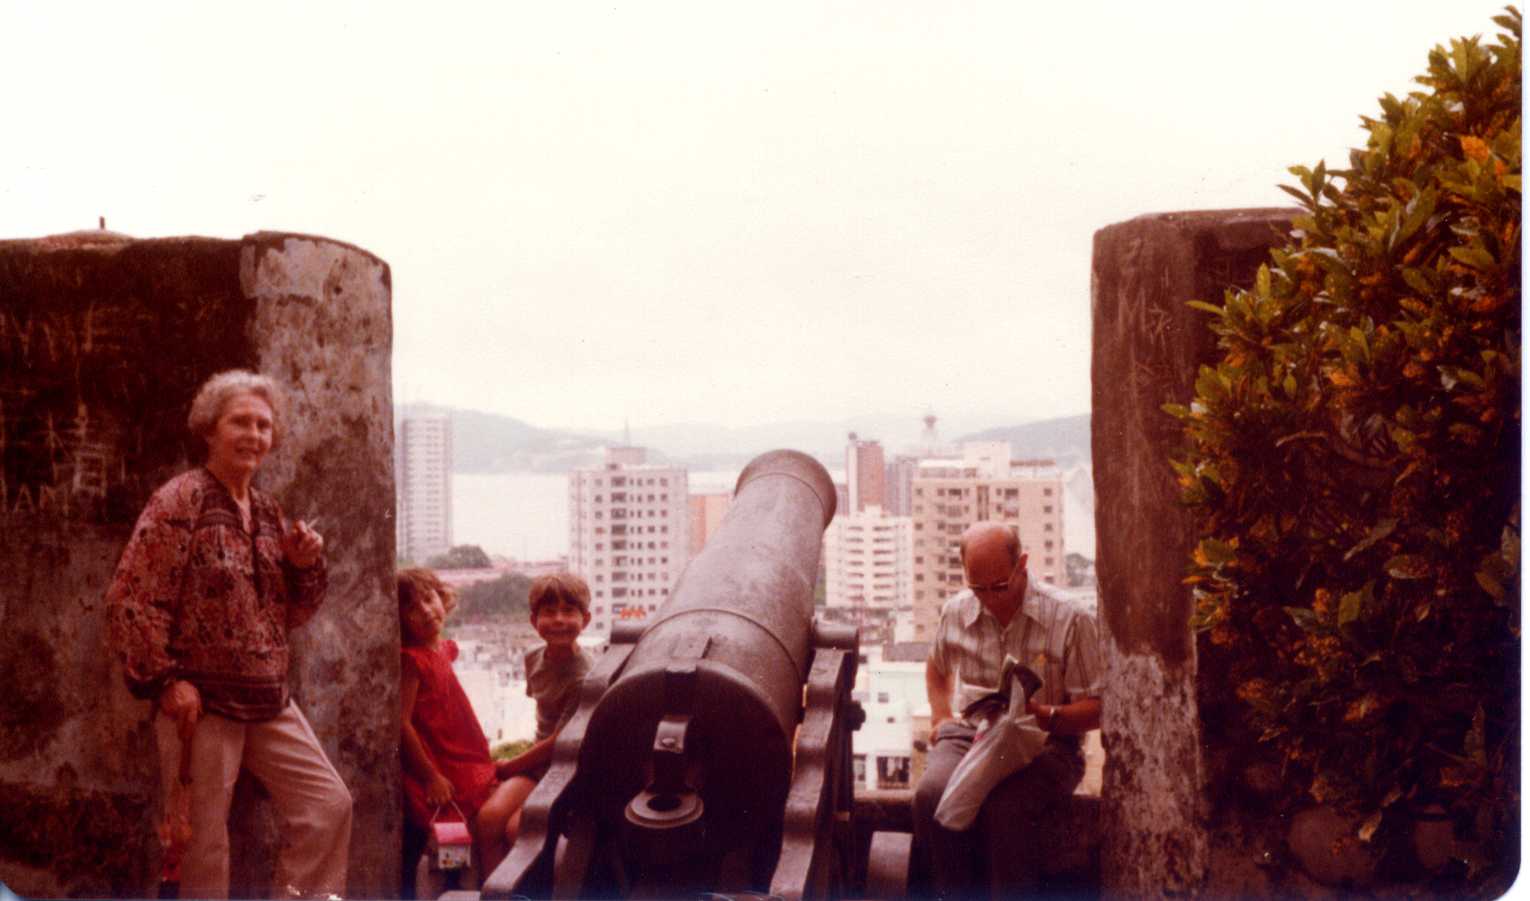 Fort overlooking Macau